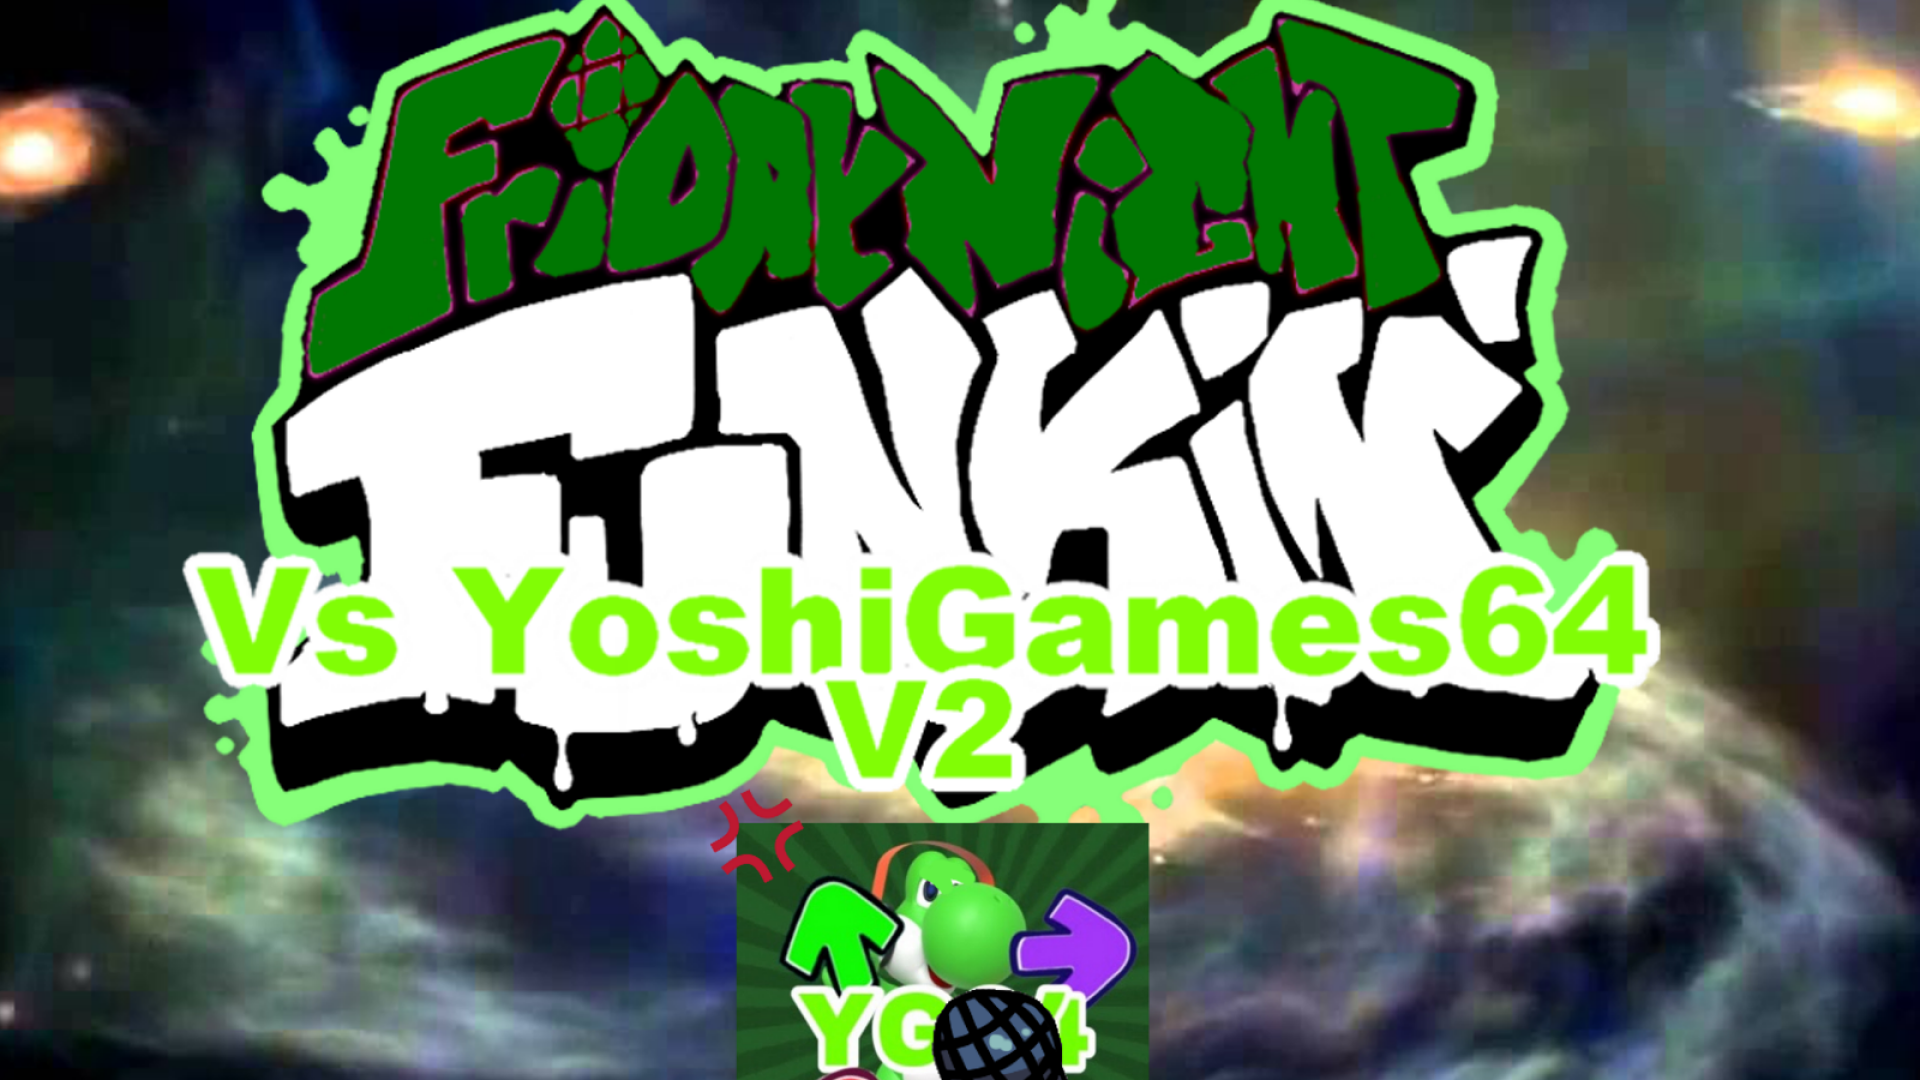 Vs YoshiGames64 [V2]